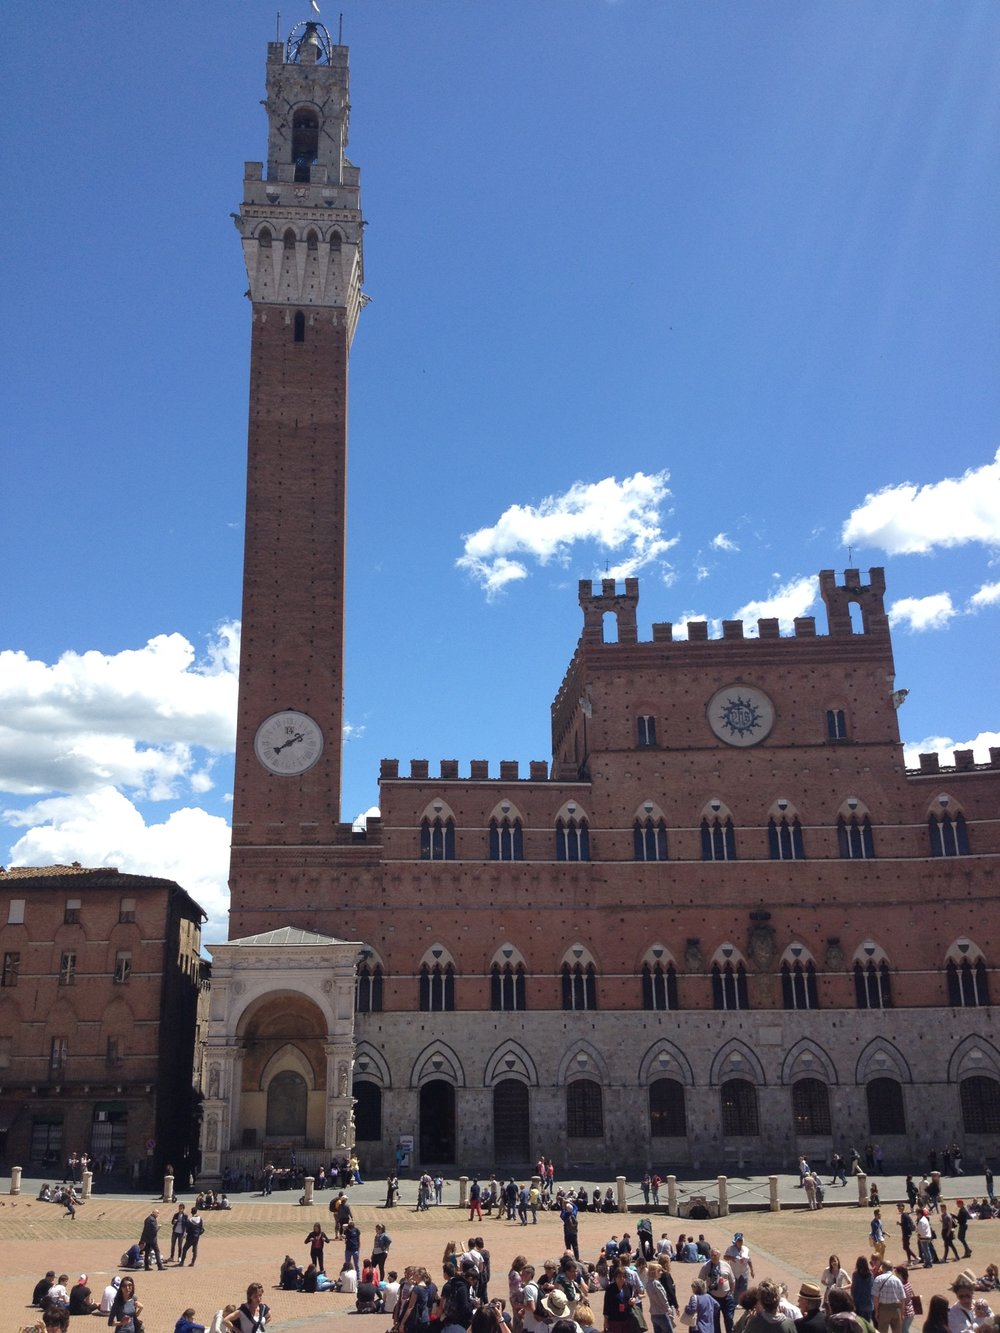 The plaza in Siena